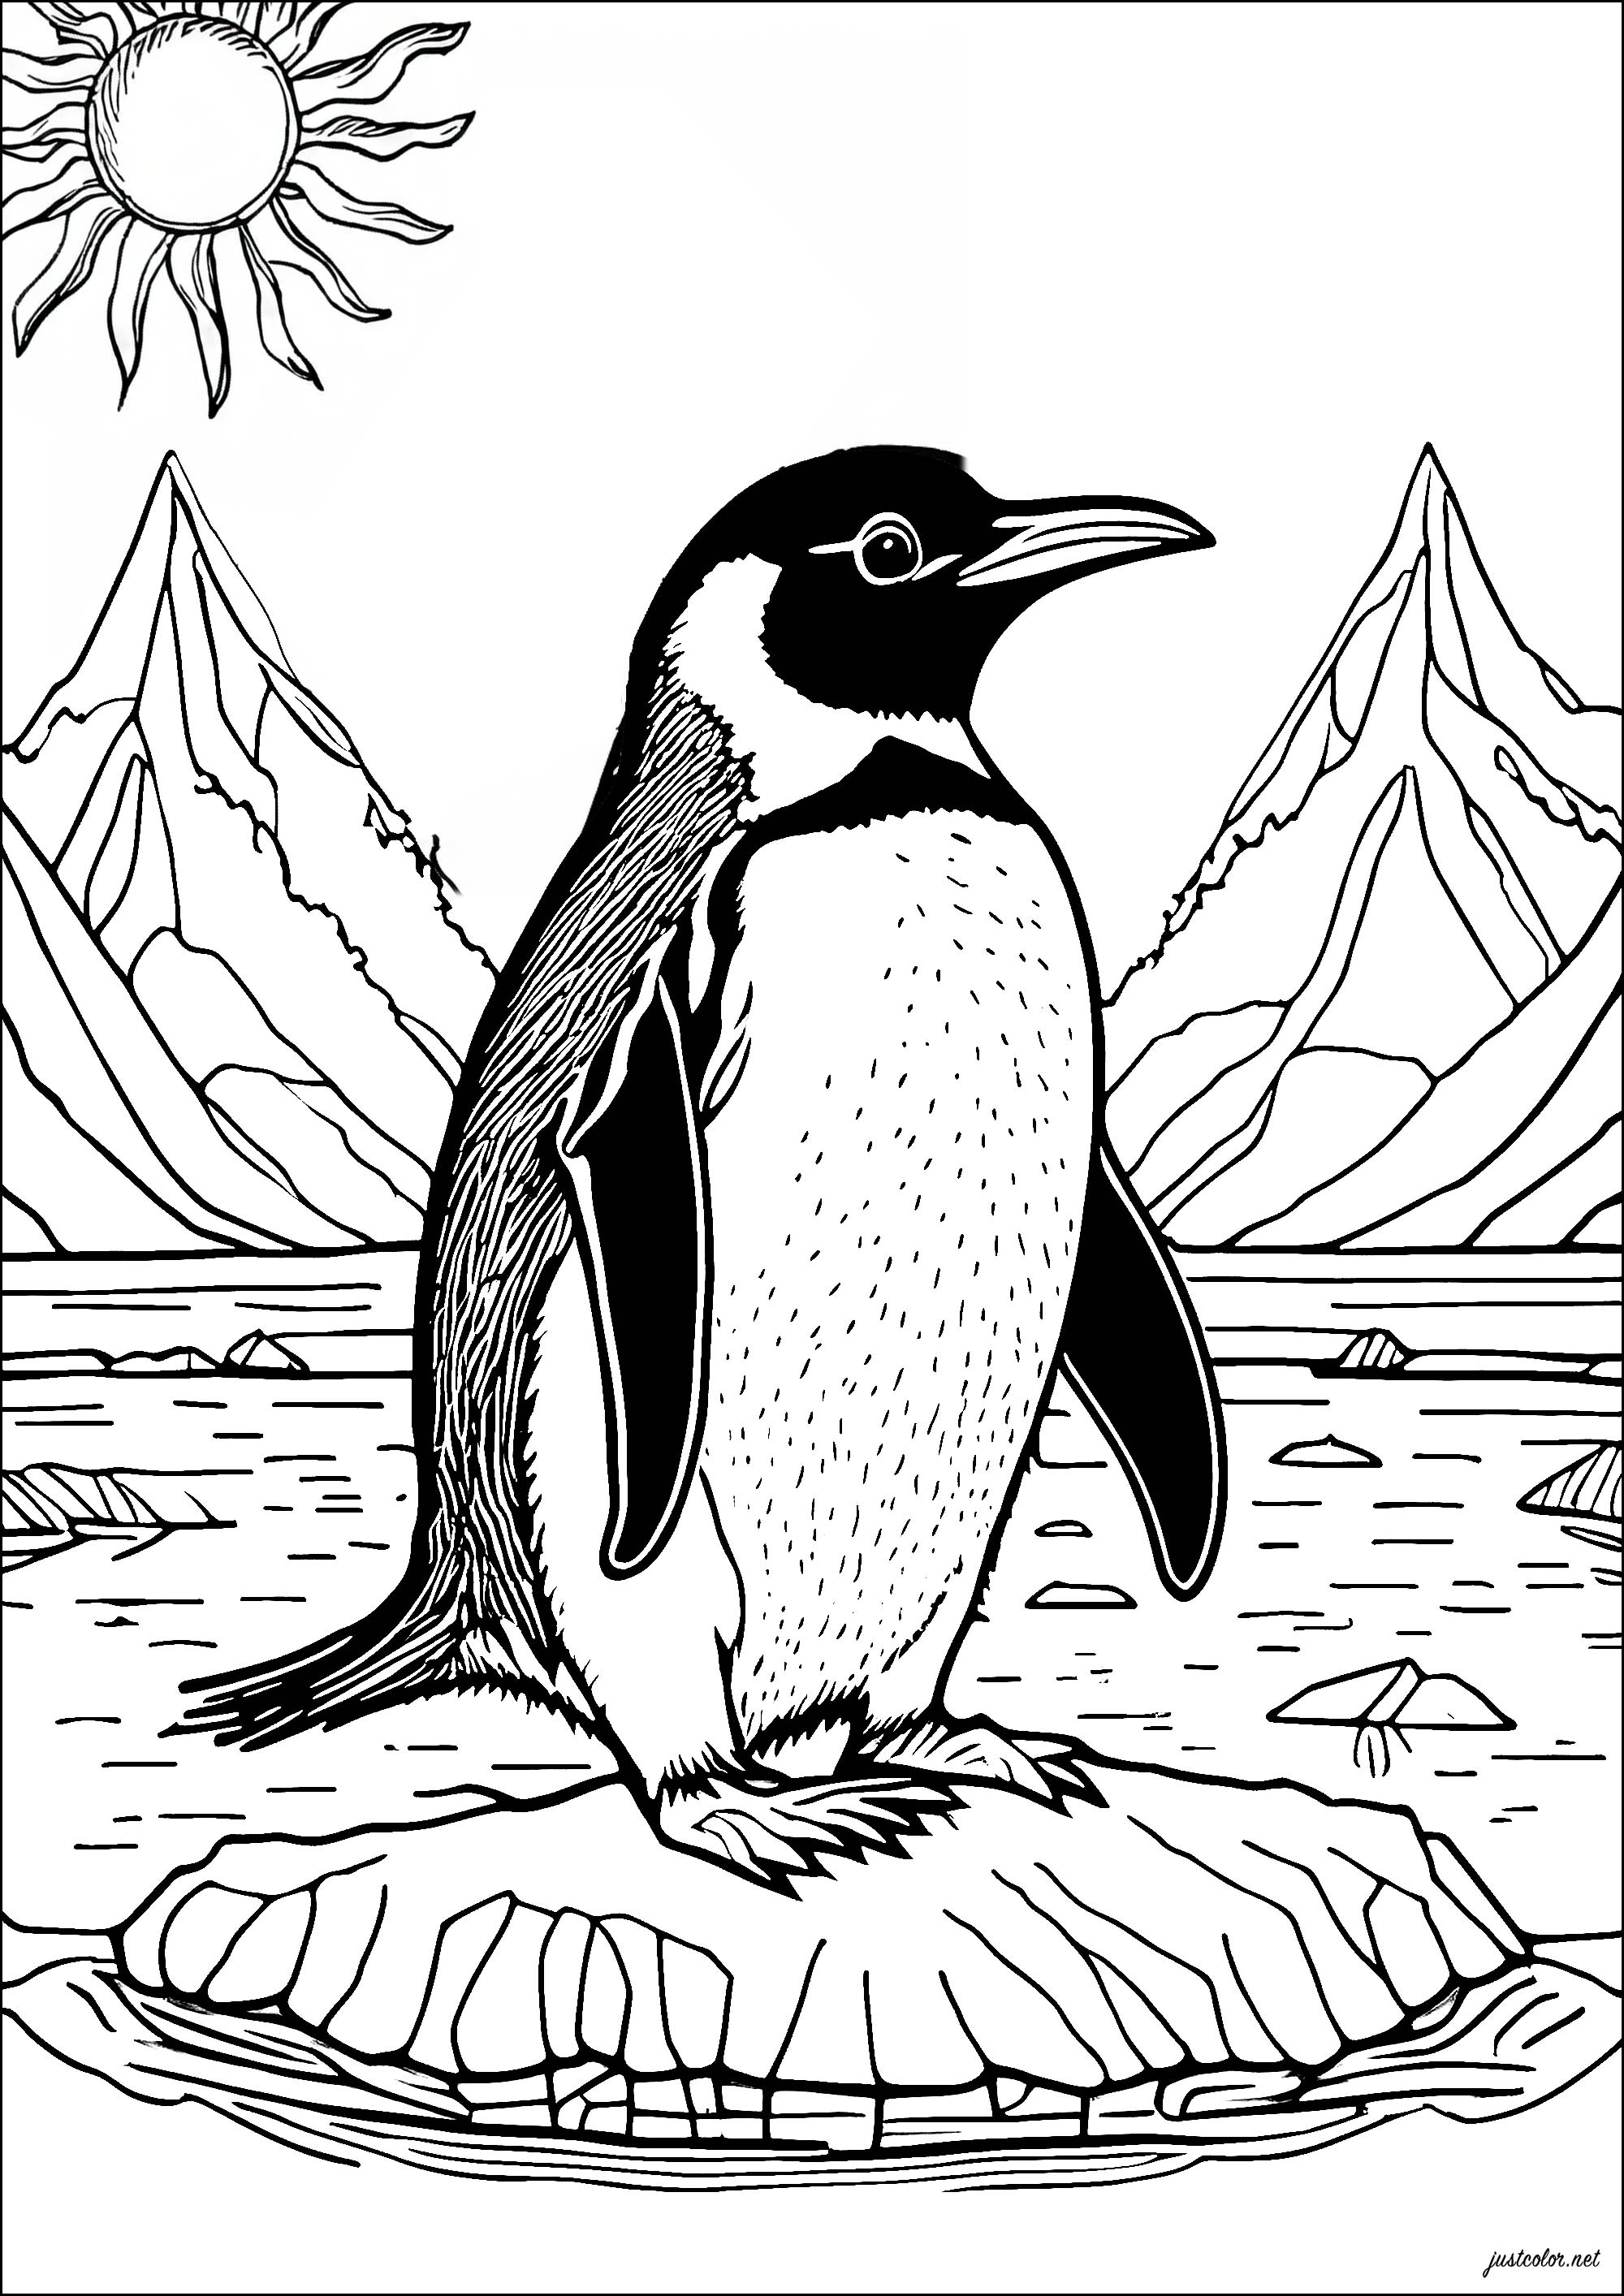 Pinguim bonito num bloco de gelo. Descobre-te num bloco de gelo com esta bela página para colorir